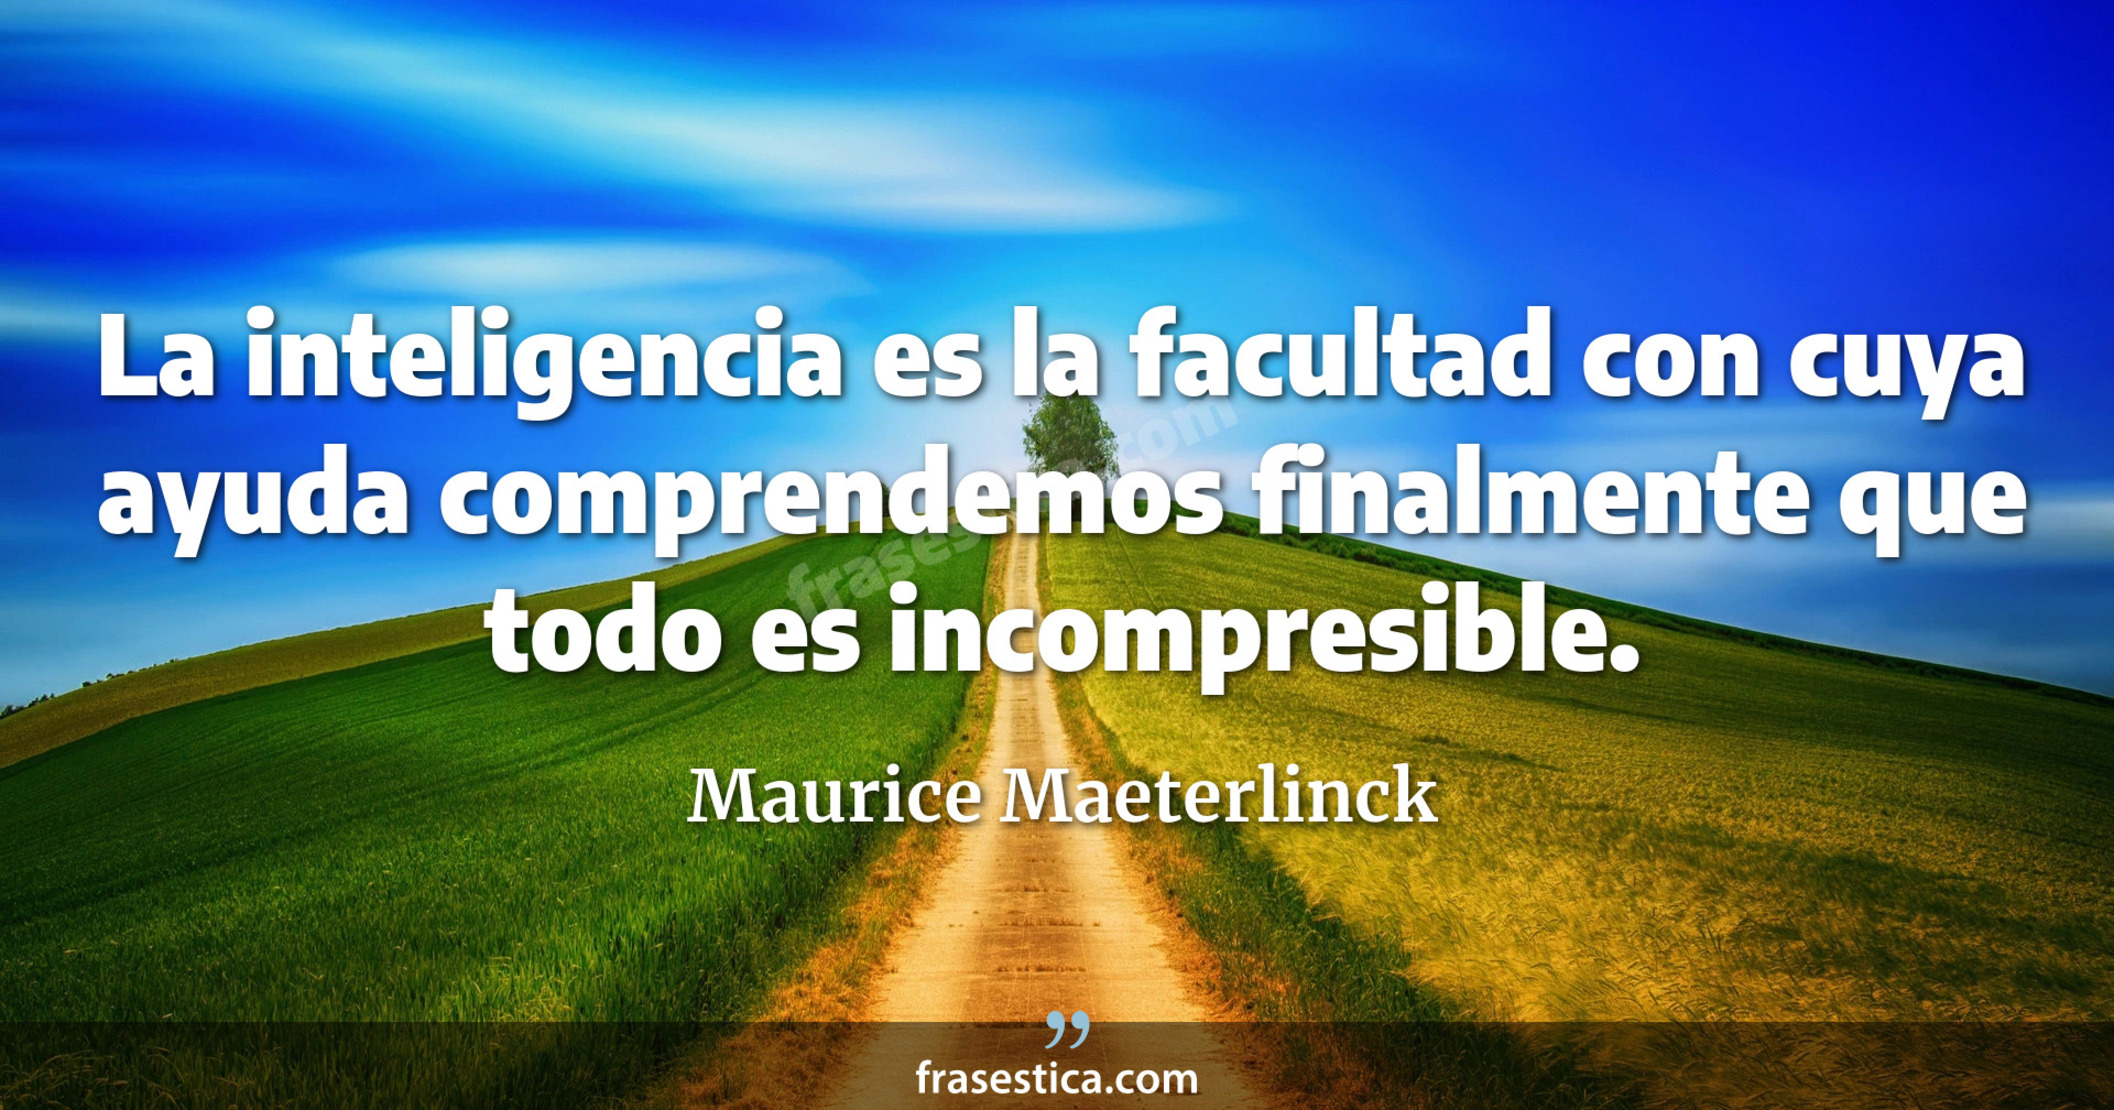 La inteligencia es la facultad con cuya ayuda comprendemos finalmente que todo es incompresible. - Maurice Maeterlinck